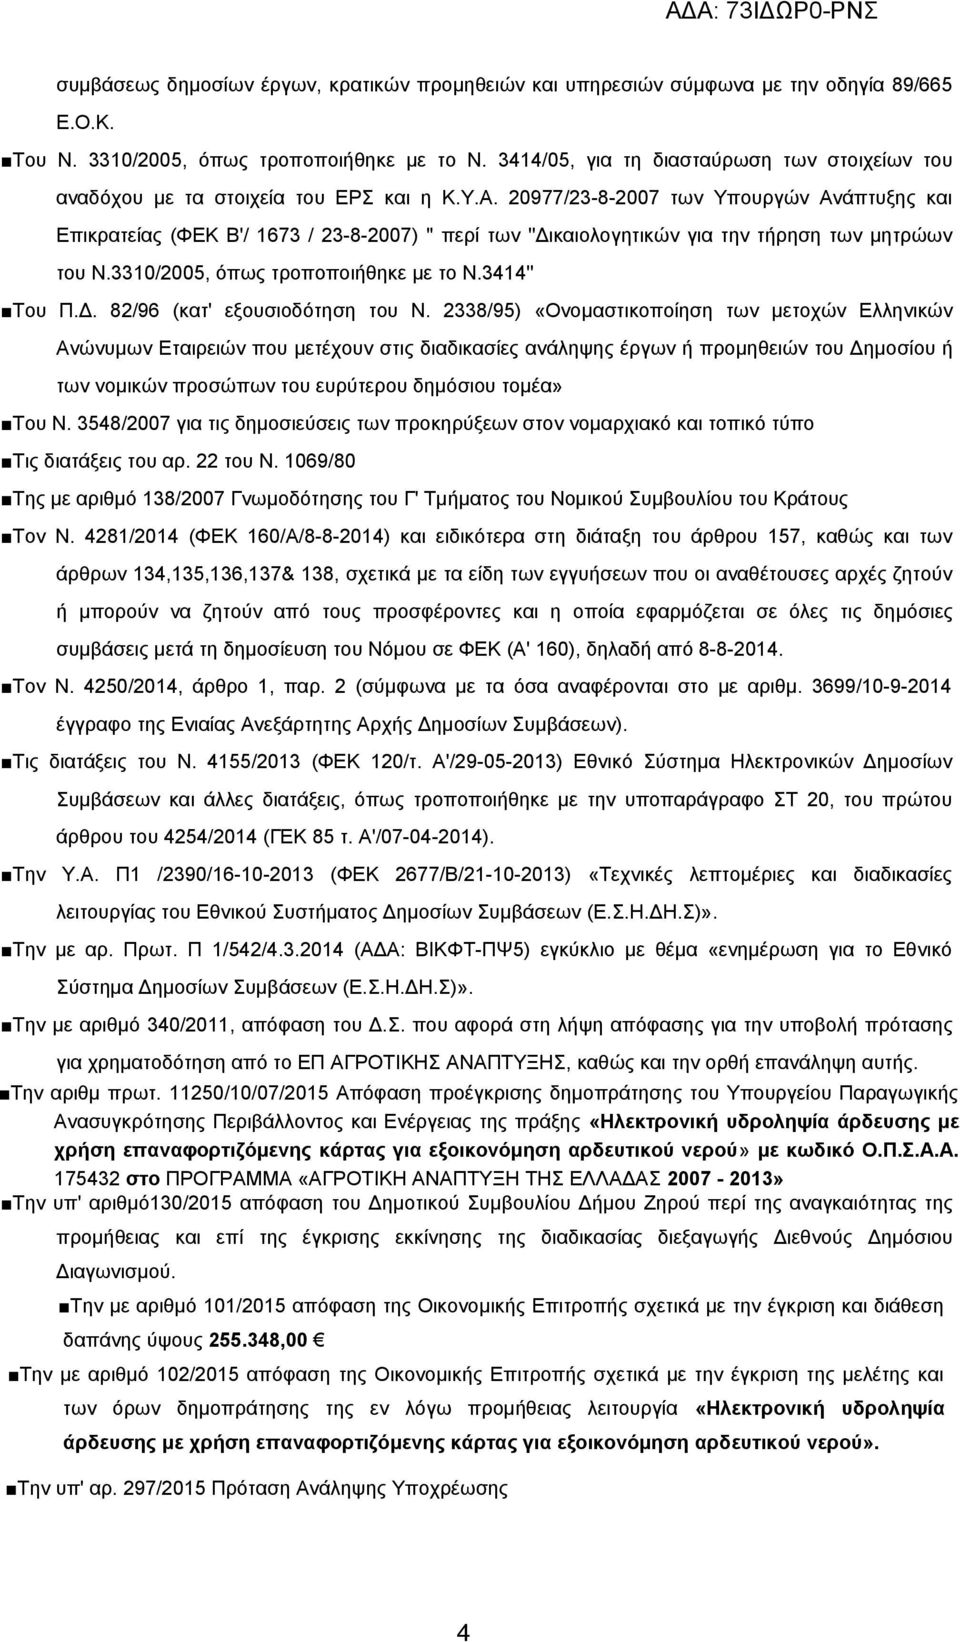 20977/23-8-2007 των Υπουργών Ανάπτυξης και Επικρατείας (ΦΕΚ Β'/ 1673 / 23-8-2007) '' περί των ''Δικαιολογητικών για την τήρηση των μητρώων του Ν.3310/2005, όπως τροποποιήθηκε με το Ν.3414'' Του Π.Δ. 82/96 (κατ' εξουσιοδότηση του Ν.